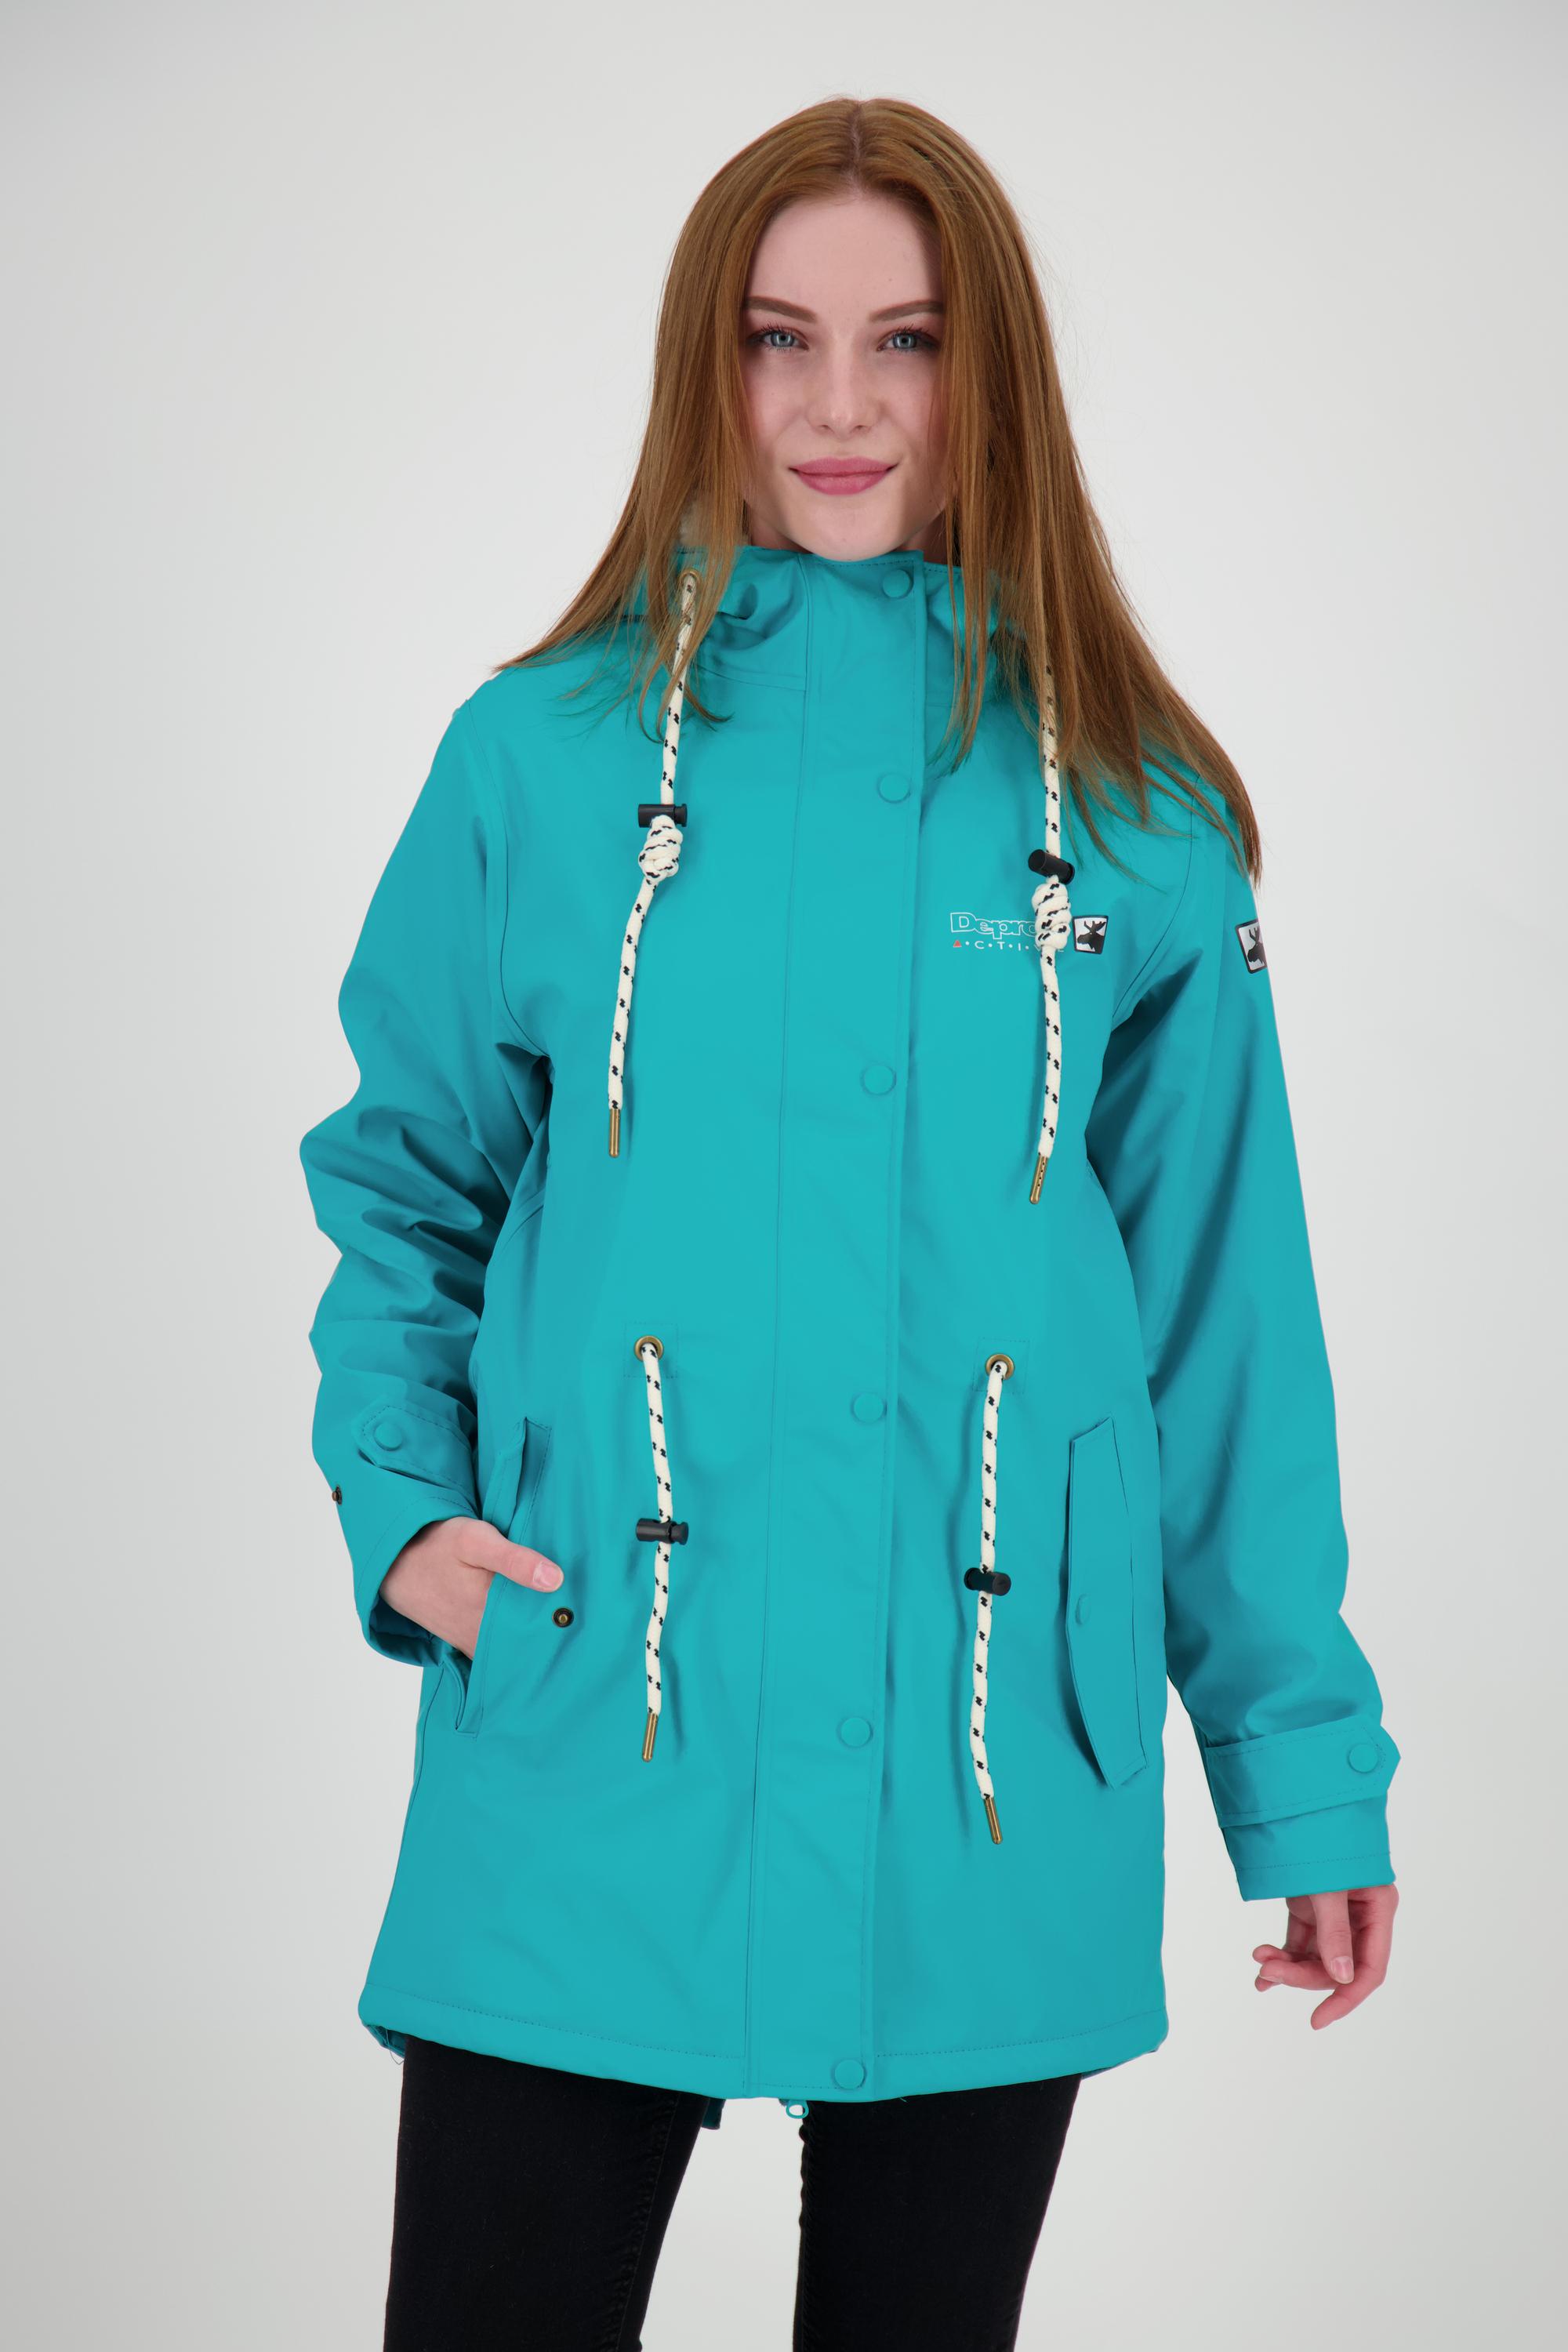 SportScheck Shop WOMEN ELLESMERE Damen Friesennerz DEPROC Online turquoise Regenjacke kaufen active im von